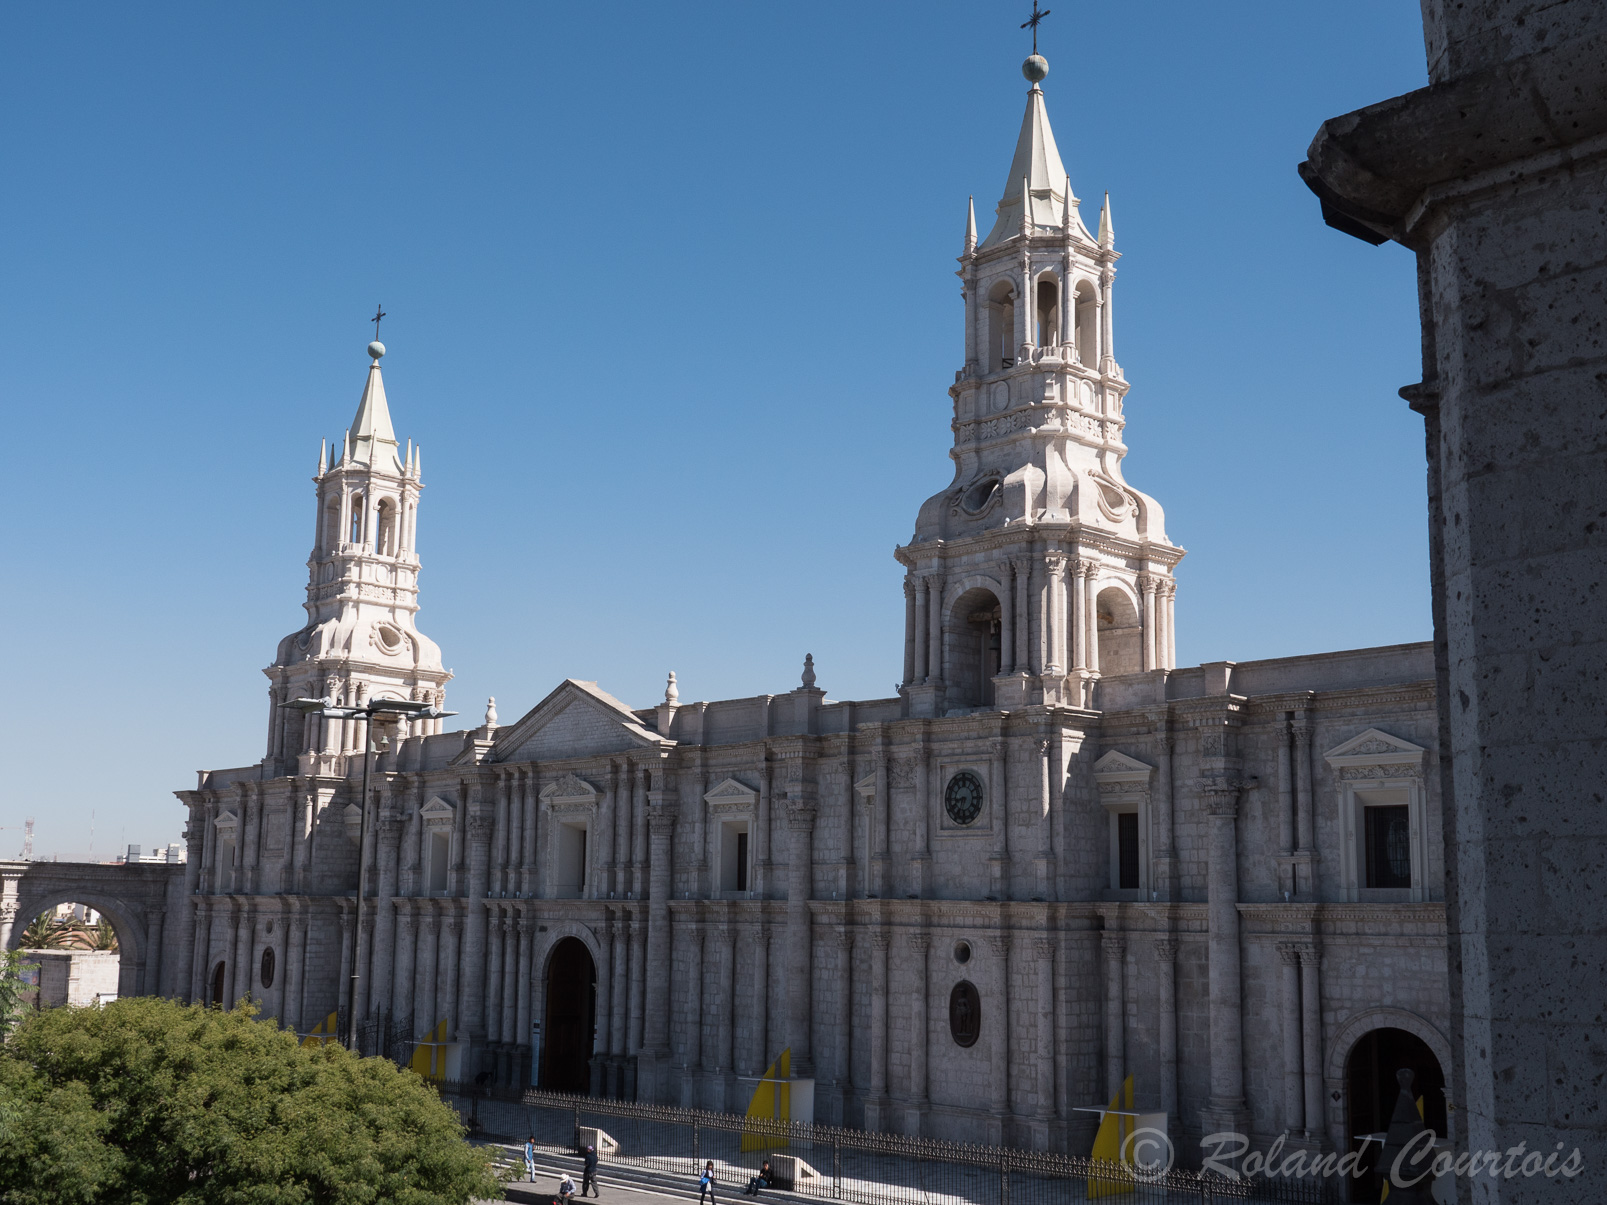 La cathédrale d'Arequipa, édifiée en 1621, a souffert de plusieurs incendies et séismes. Elle fut reconstruite en 1868